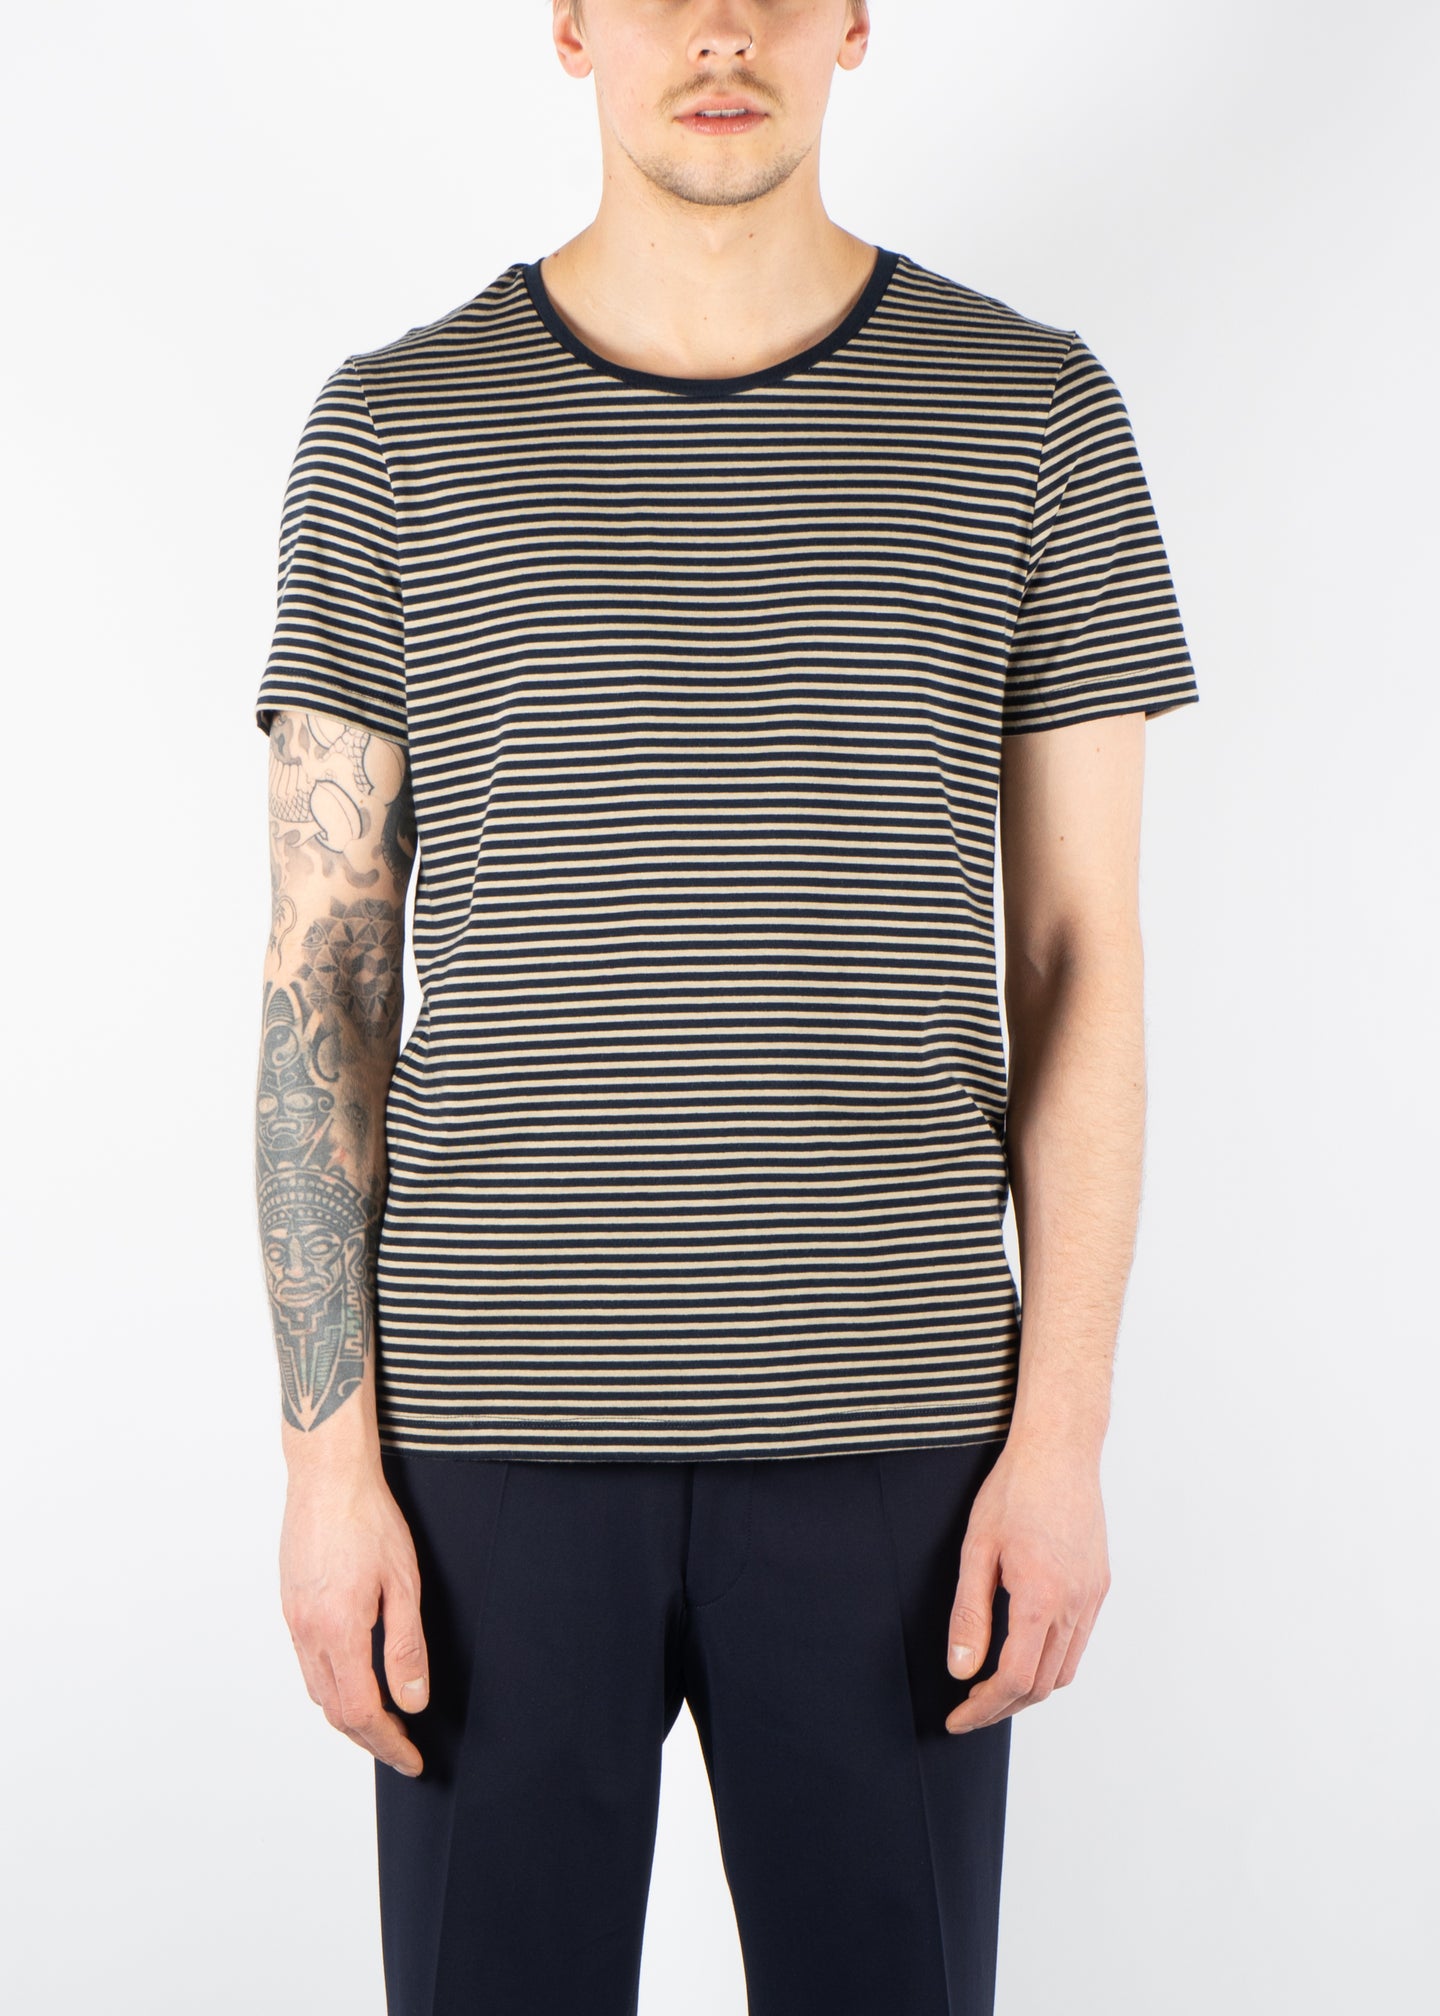 Kyran Striped T-Shirt Navy